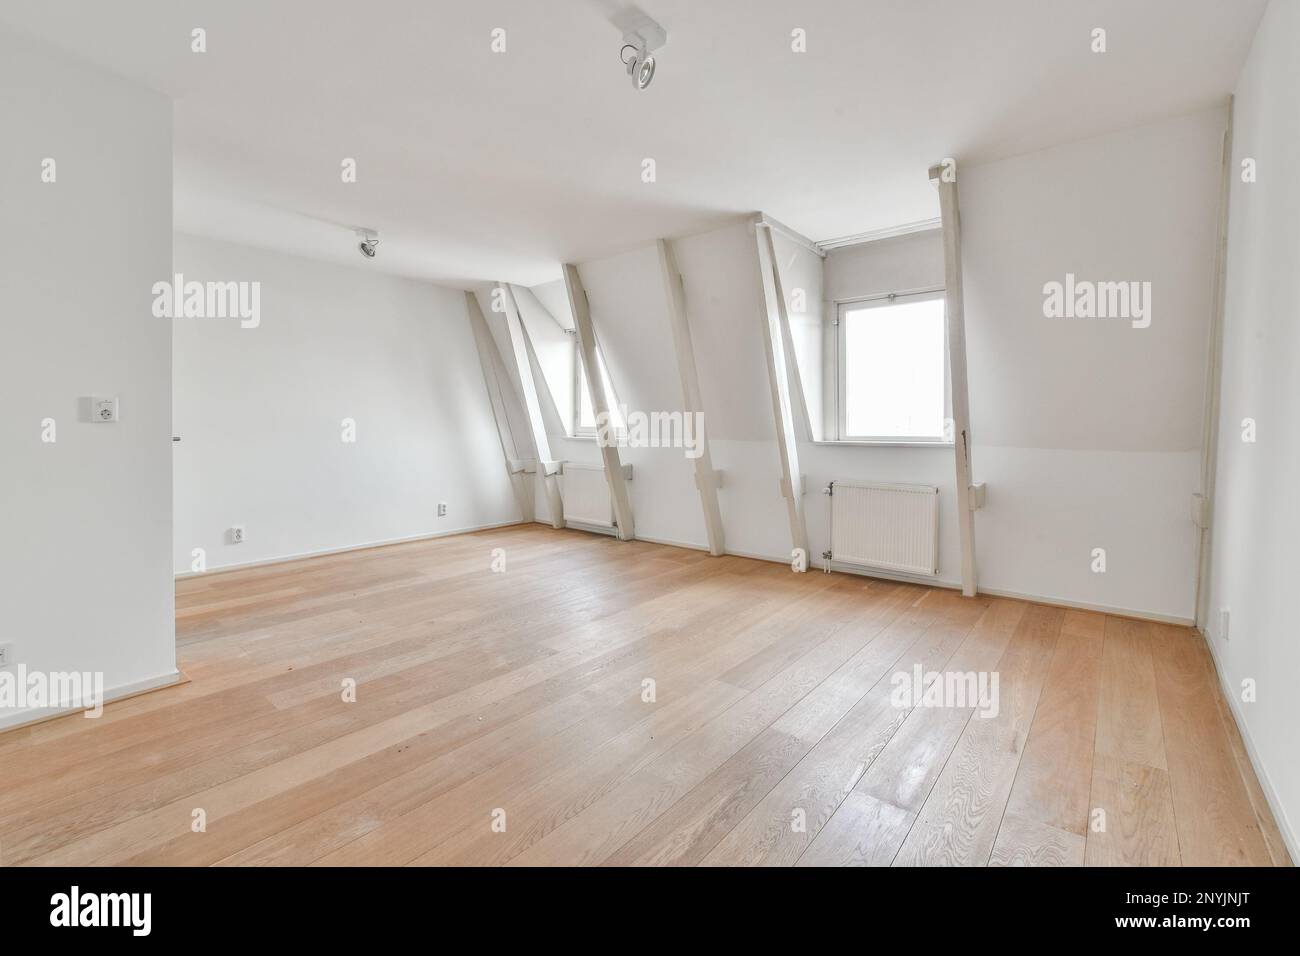 Ein leeres Zimmer mit Holzfußboden und weißen Wänden im Zimmer ist sehr sauber, es ist schwer zu sehen Stockfoto